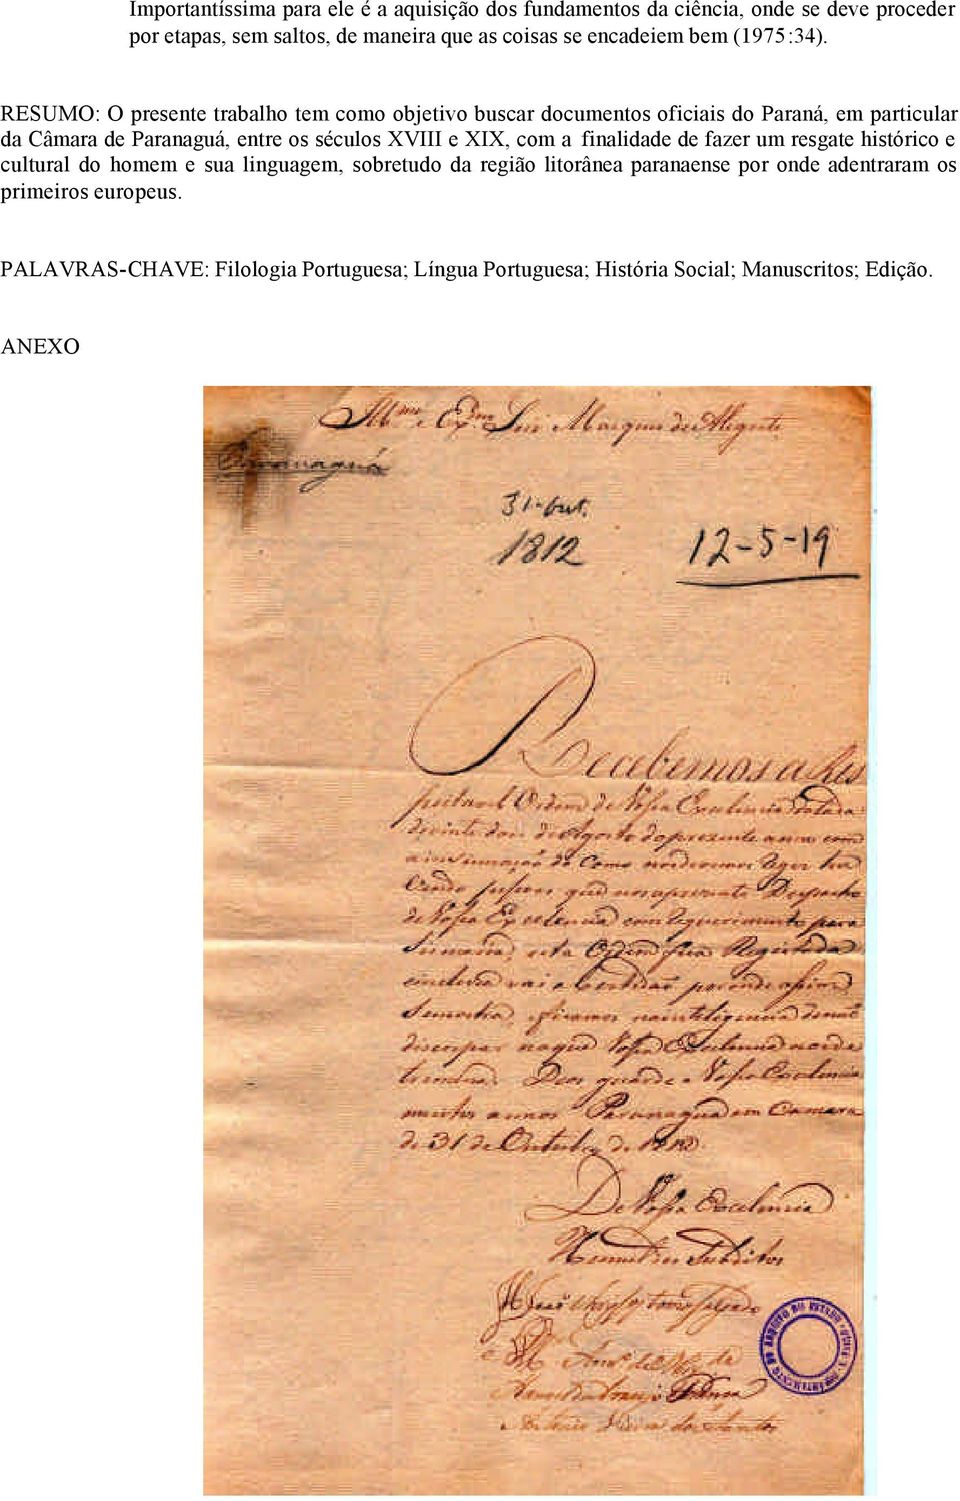 RESUMO: O presente trabalho tem como objetivo buscar documentos oficiais do Paraná, em particular da Câmara de Paranaguá, entre os séculos XVIII e